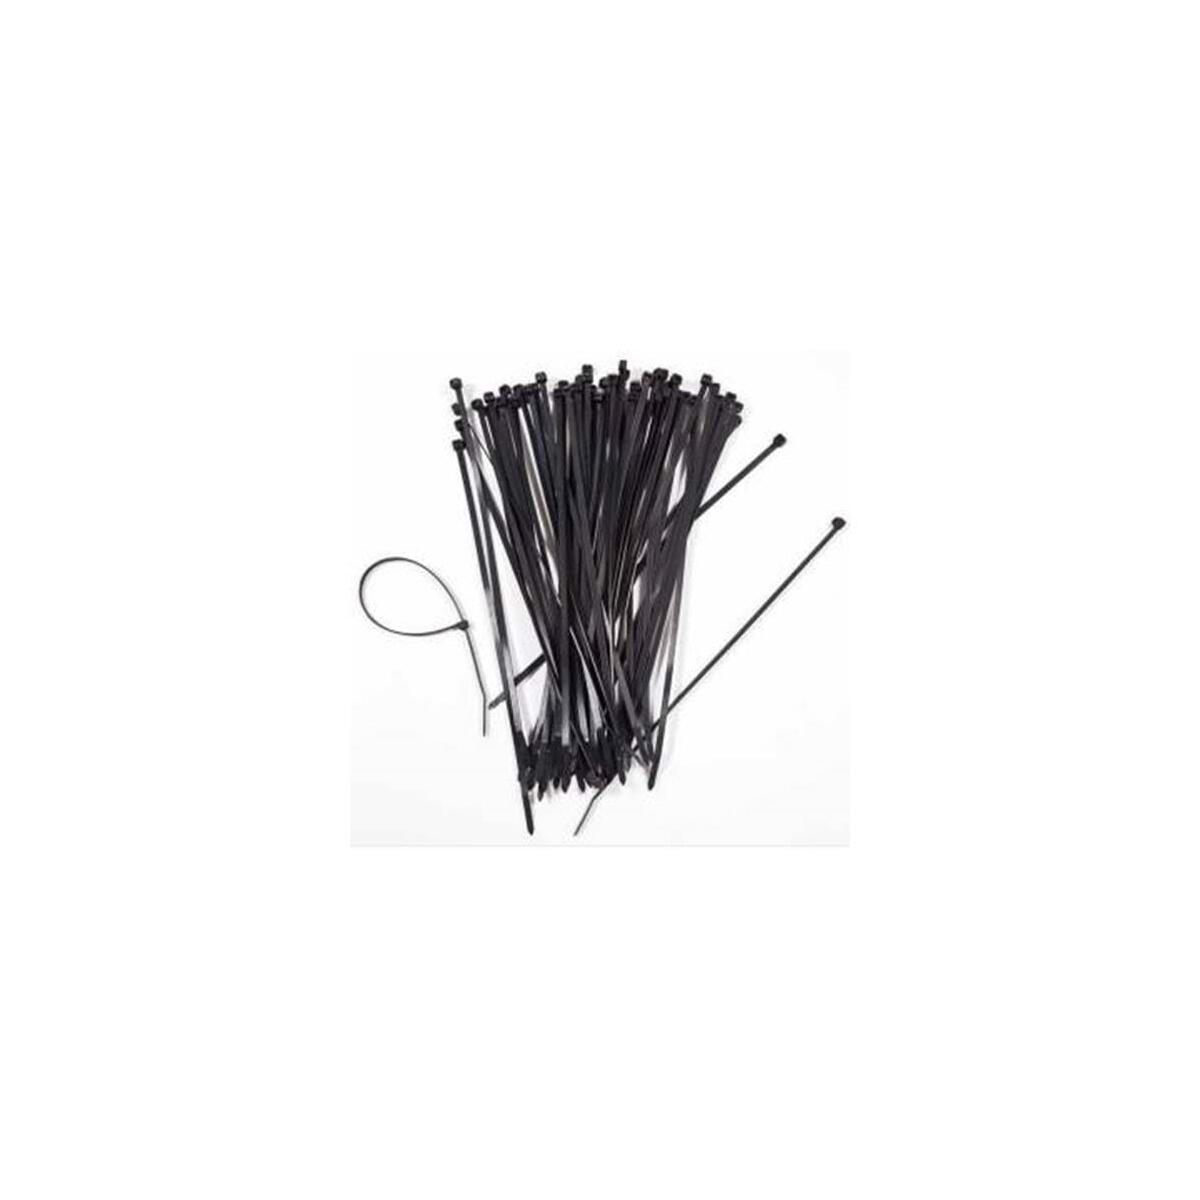 Skm Plastik Cırt Kelepçe 30 Cm (100 Ad) Siyah